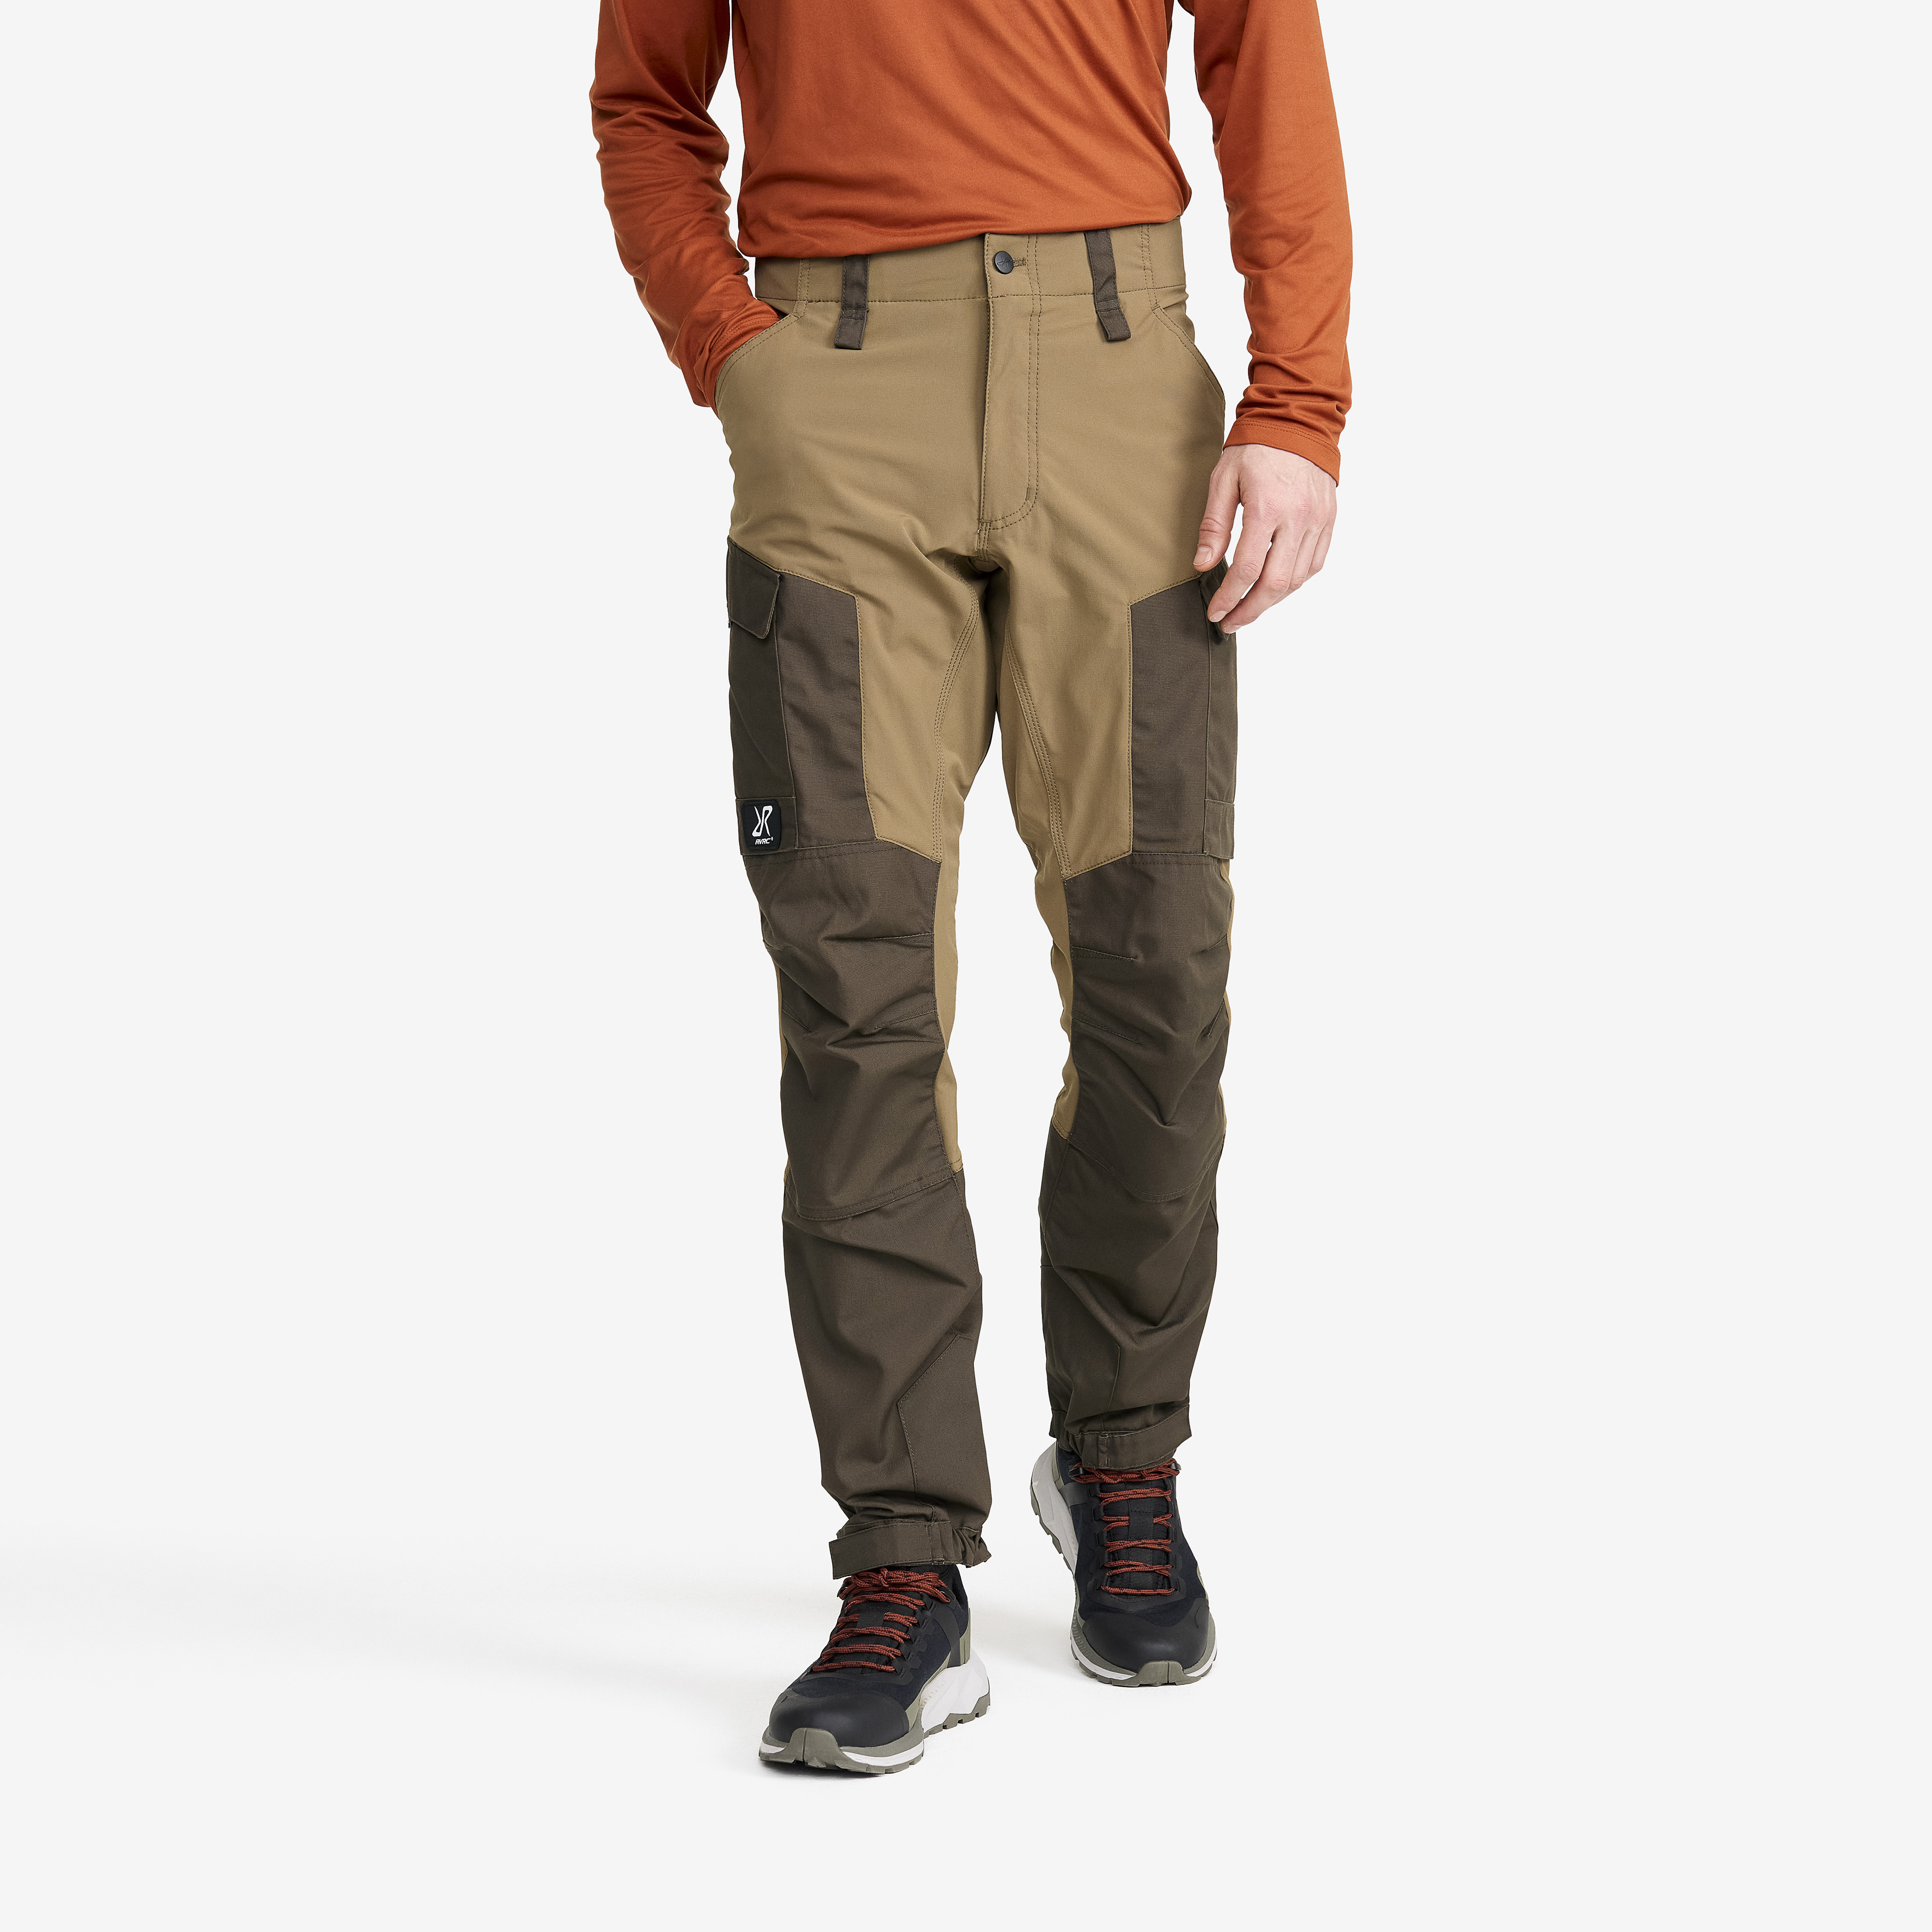 RVRC GP outdoorové kalhoty pro muže v hnědé barvě